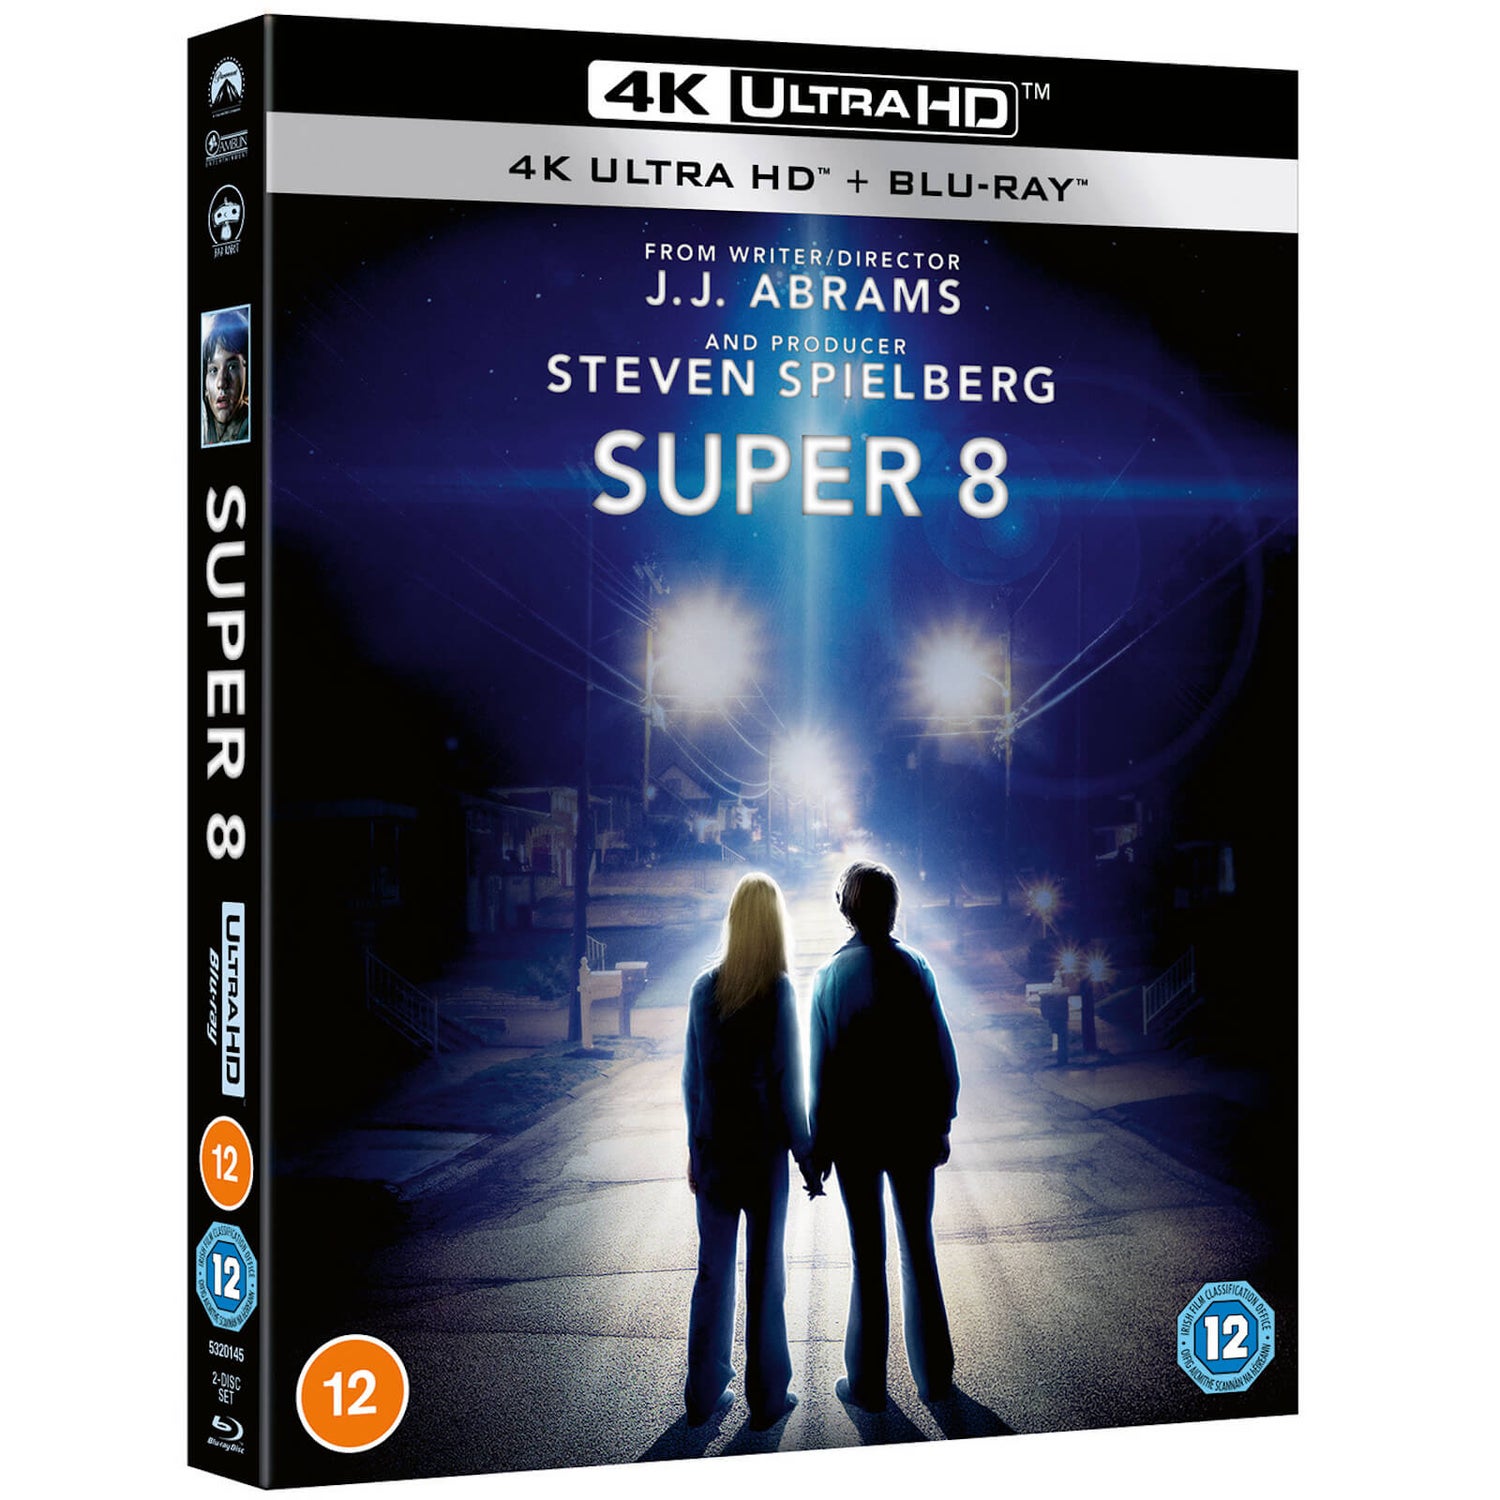 Super 8 10th Anniversary - Zavvi Exclusive 4K Ultra HD Steelbook with Slipcase (Includes Blu-ray)